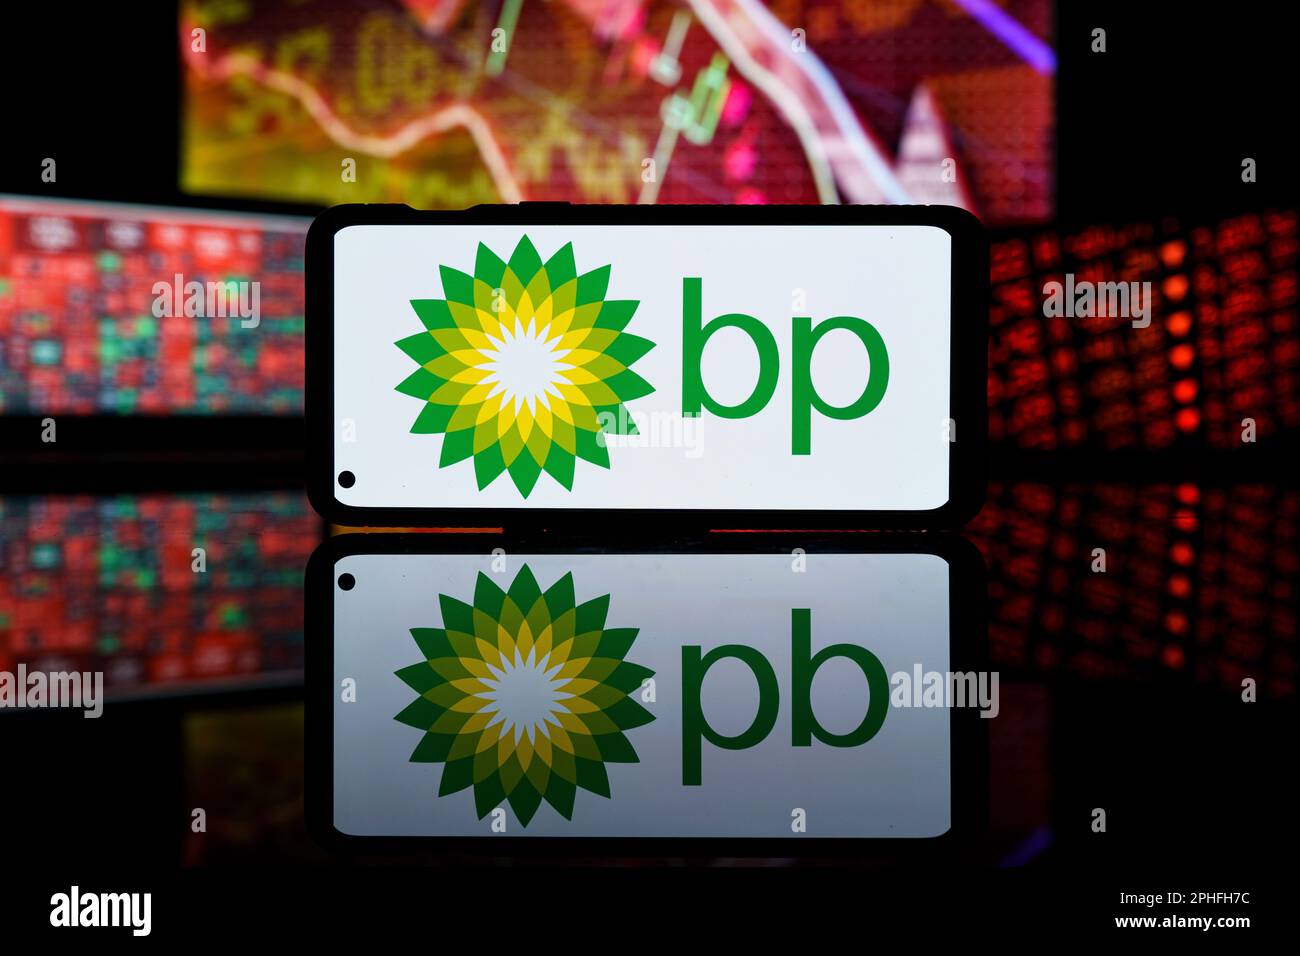 Les actions de la société BP ont chuté sur le marché boursier. Crise et échec financiers de la société BP. Banque D'Images